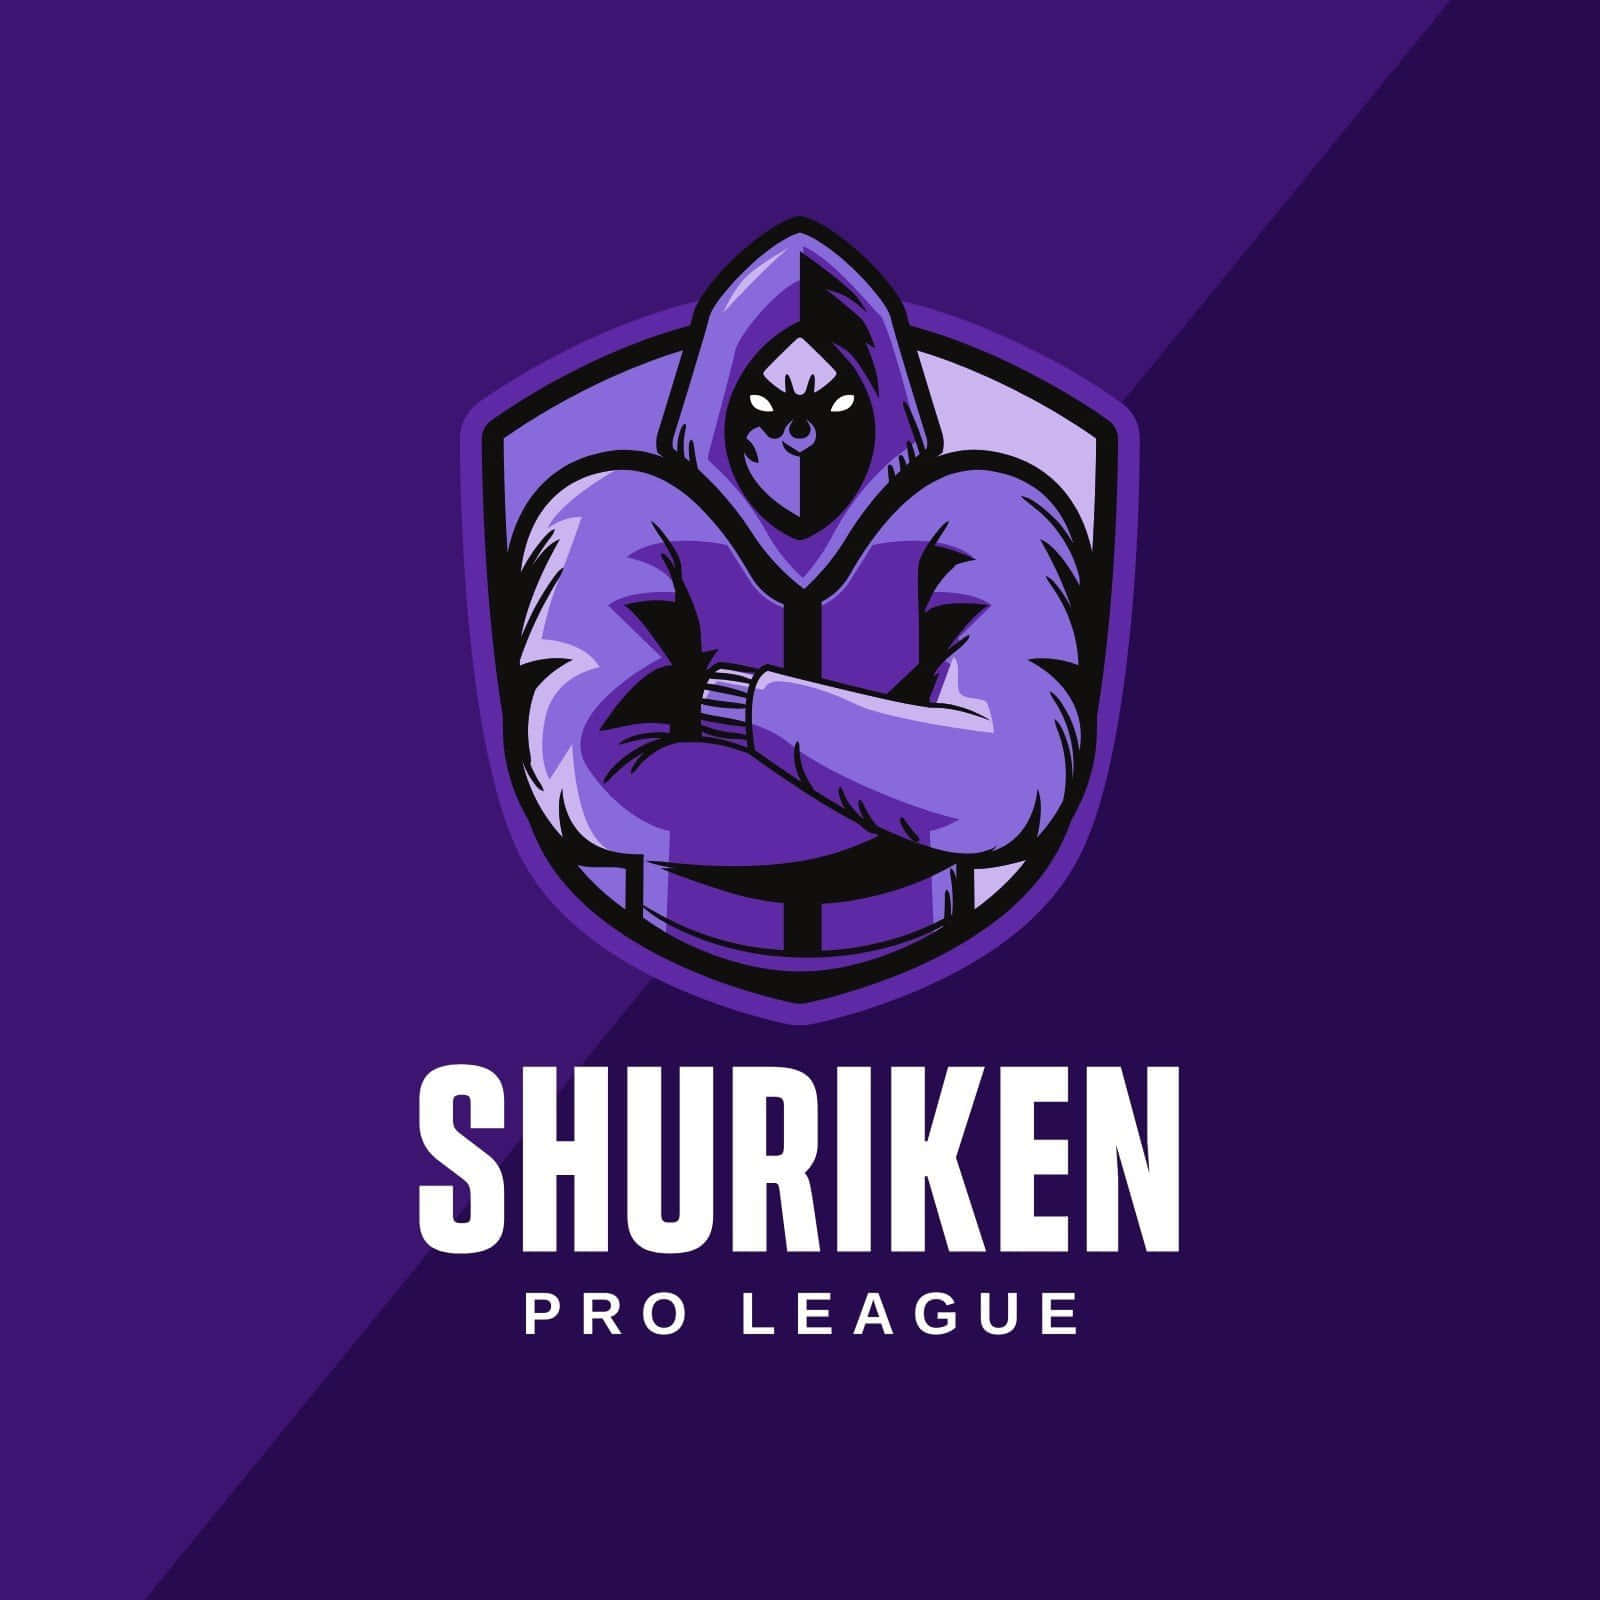 Shuriken Pro League Cool Xbox Profile Picture